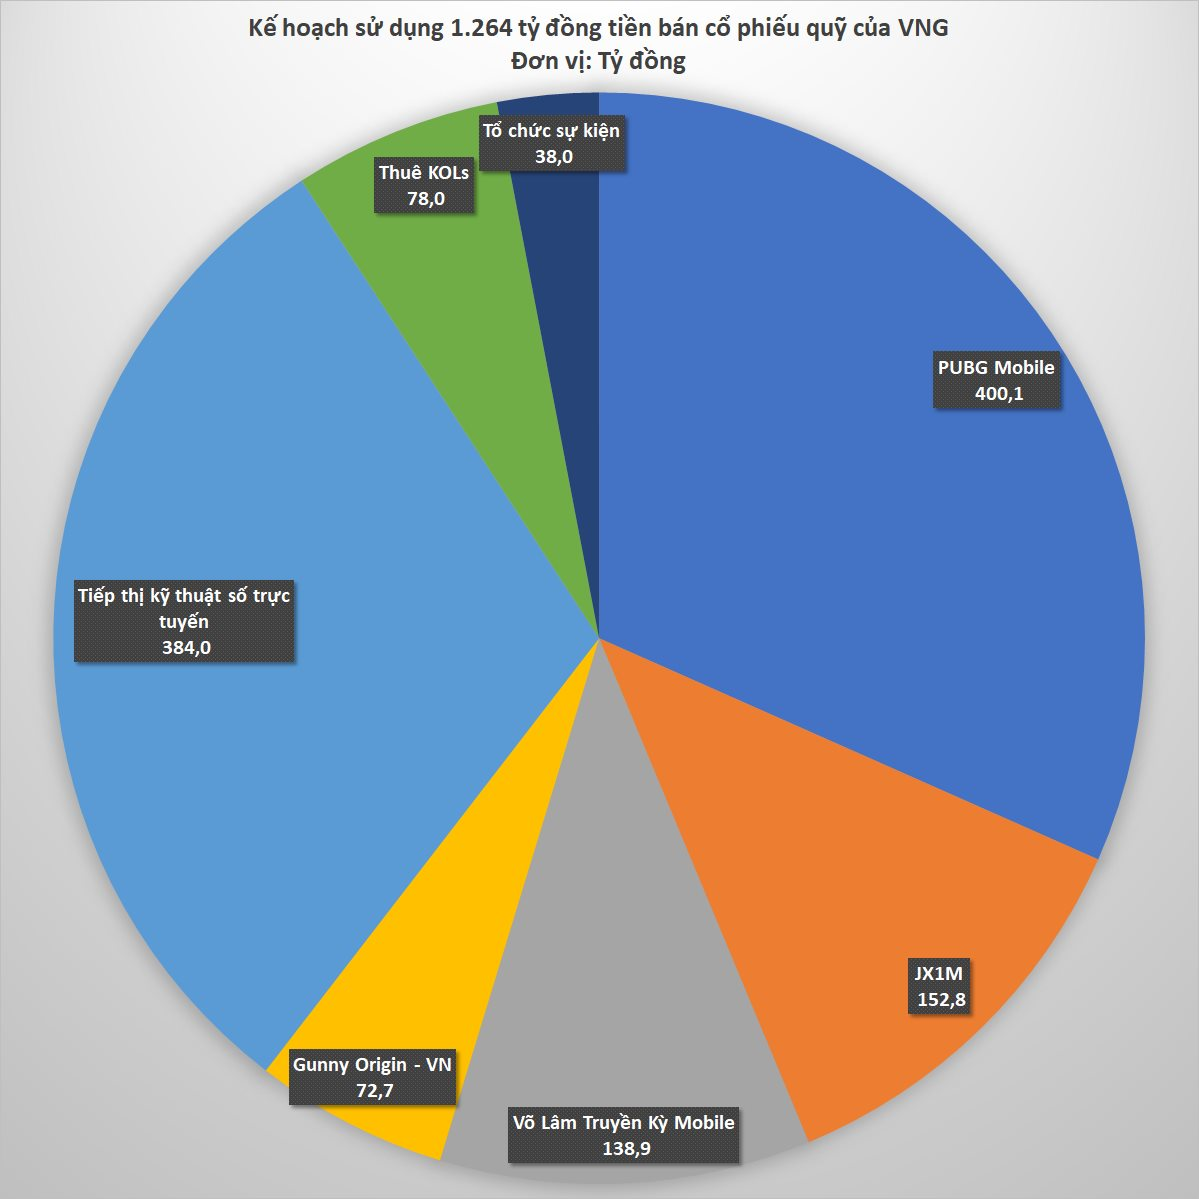 Chi tiết kế hoạch tiêu nghìn tỷ của VNG: Hơn 400 tỷ đồng cho bản quyền game PUBG Mobile, 139 tỷ đồng cho Võ Lâm Truyền Kỳ Mobile, 78 tỷ đồng thuê các KOLs - Ảnh 2.